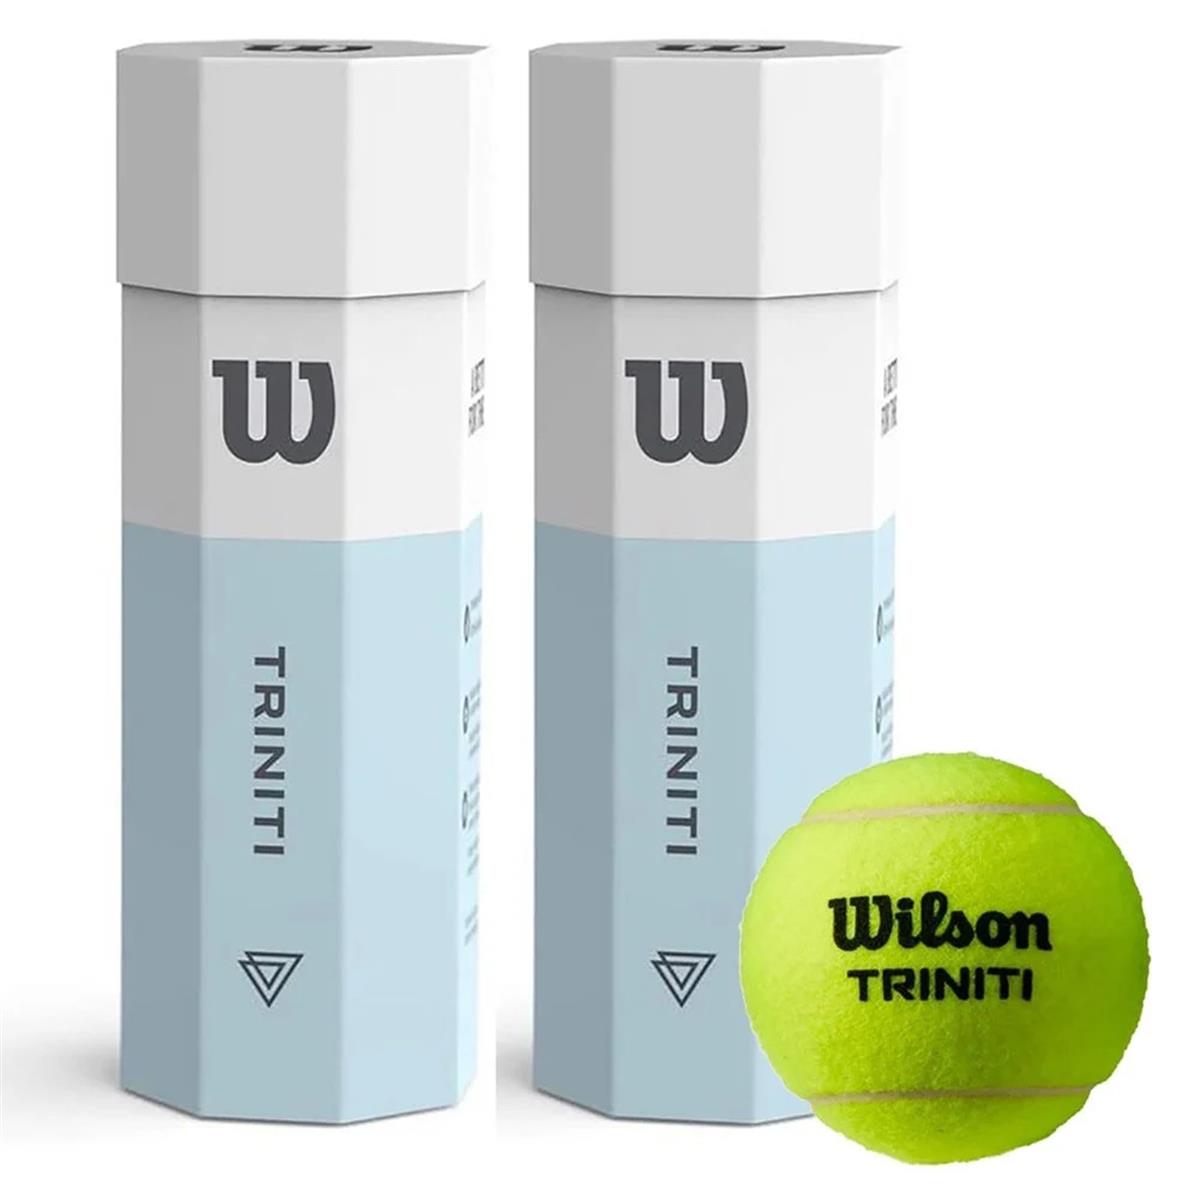 2 Kutu Wilson Triniti 3lü Tenis Topu Karton Ambalajda